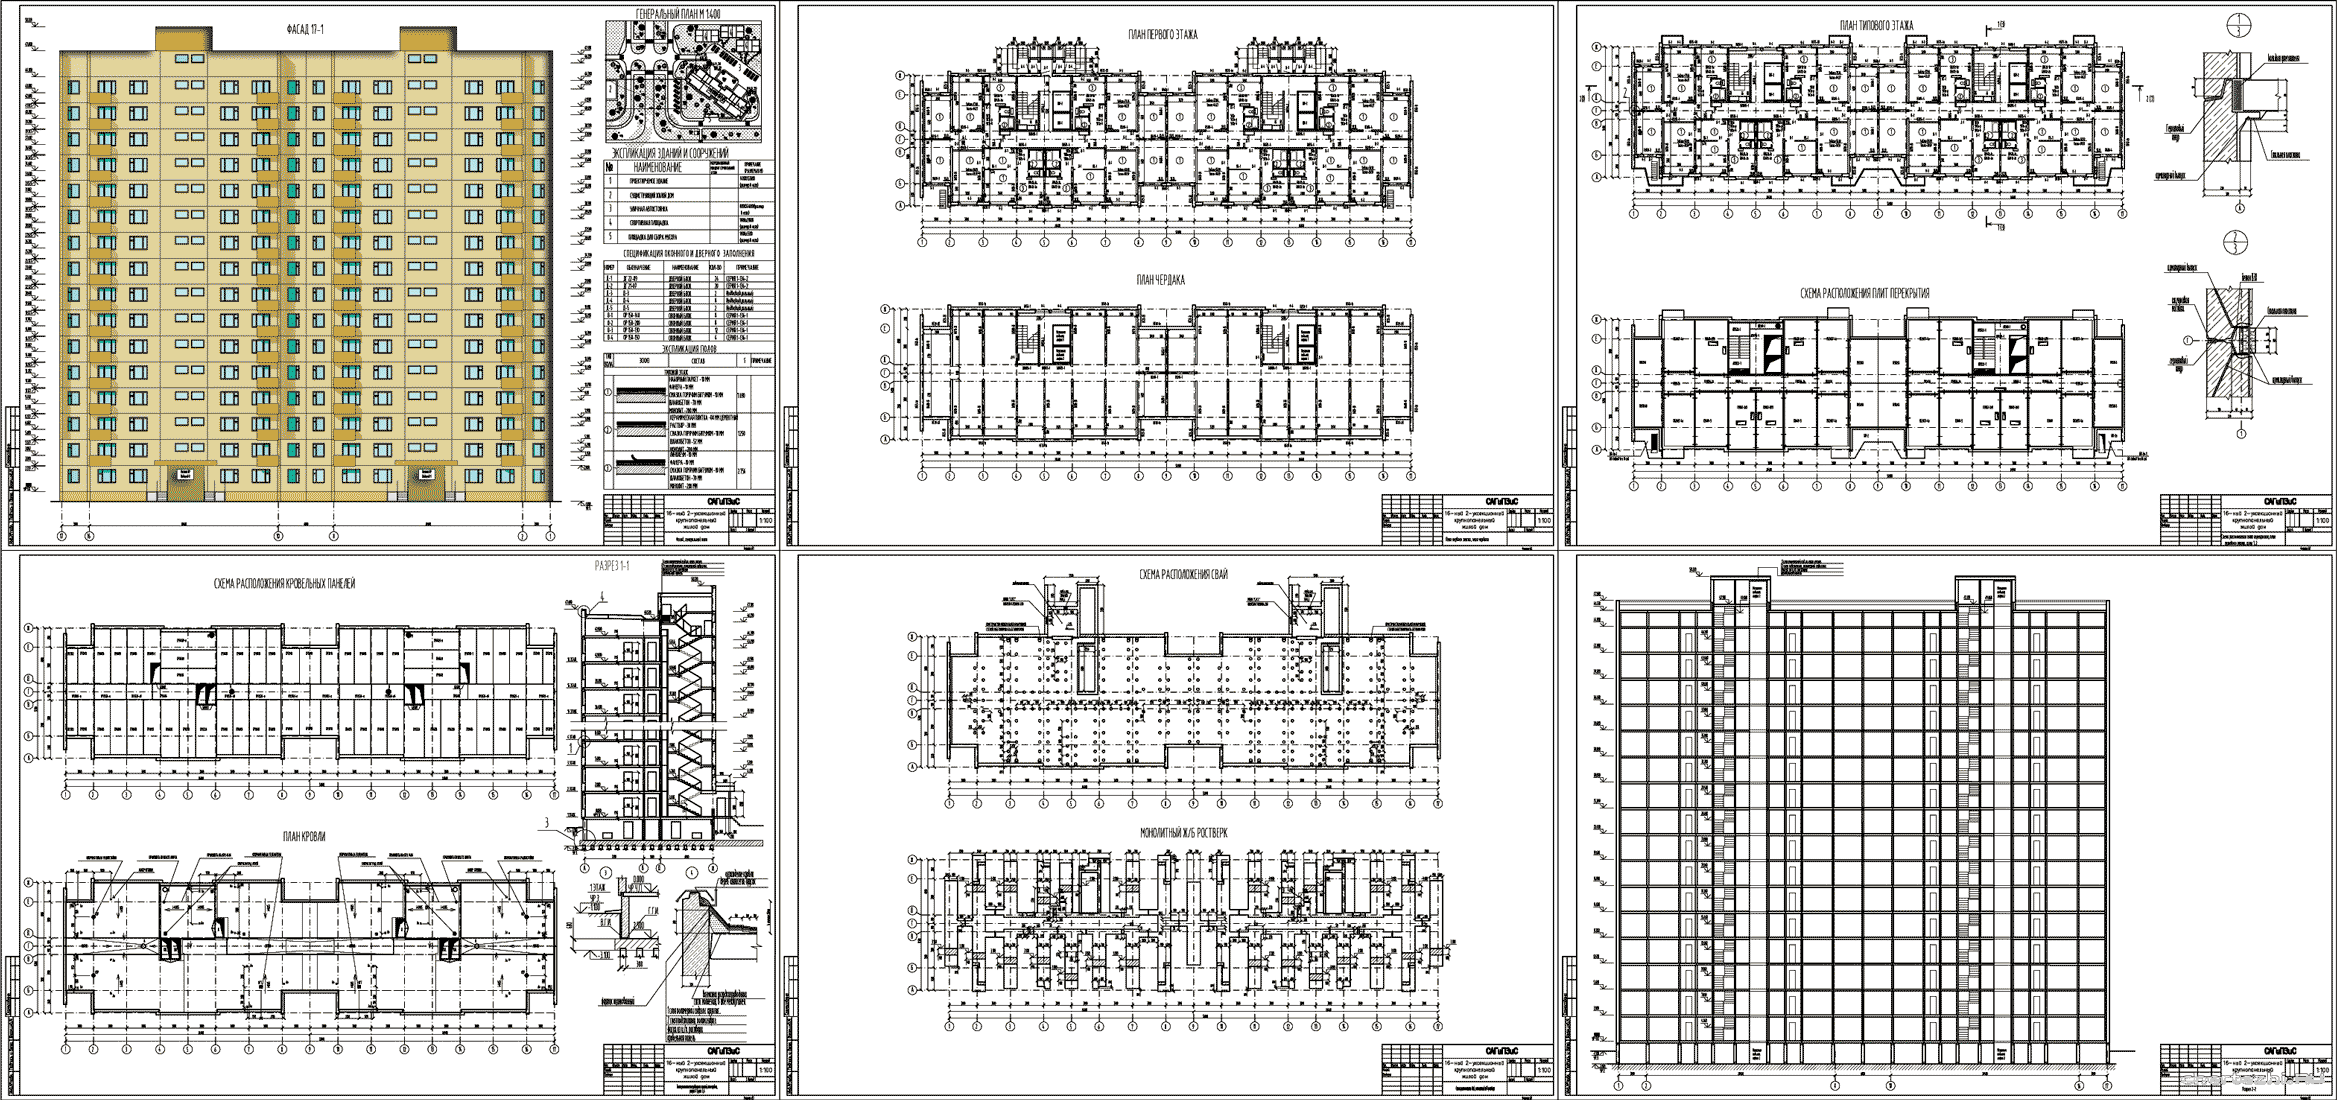 Курсовой проект - 16-ти этажный 2-х секционный крупнопанельный жилой дом 52,8 х 14,1 м в г. Сургут